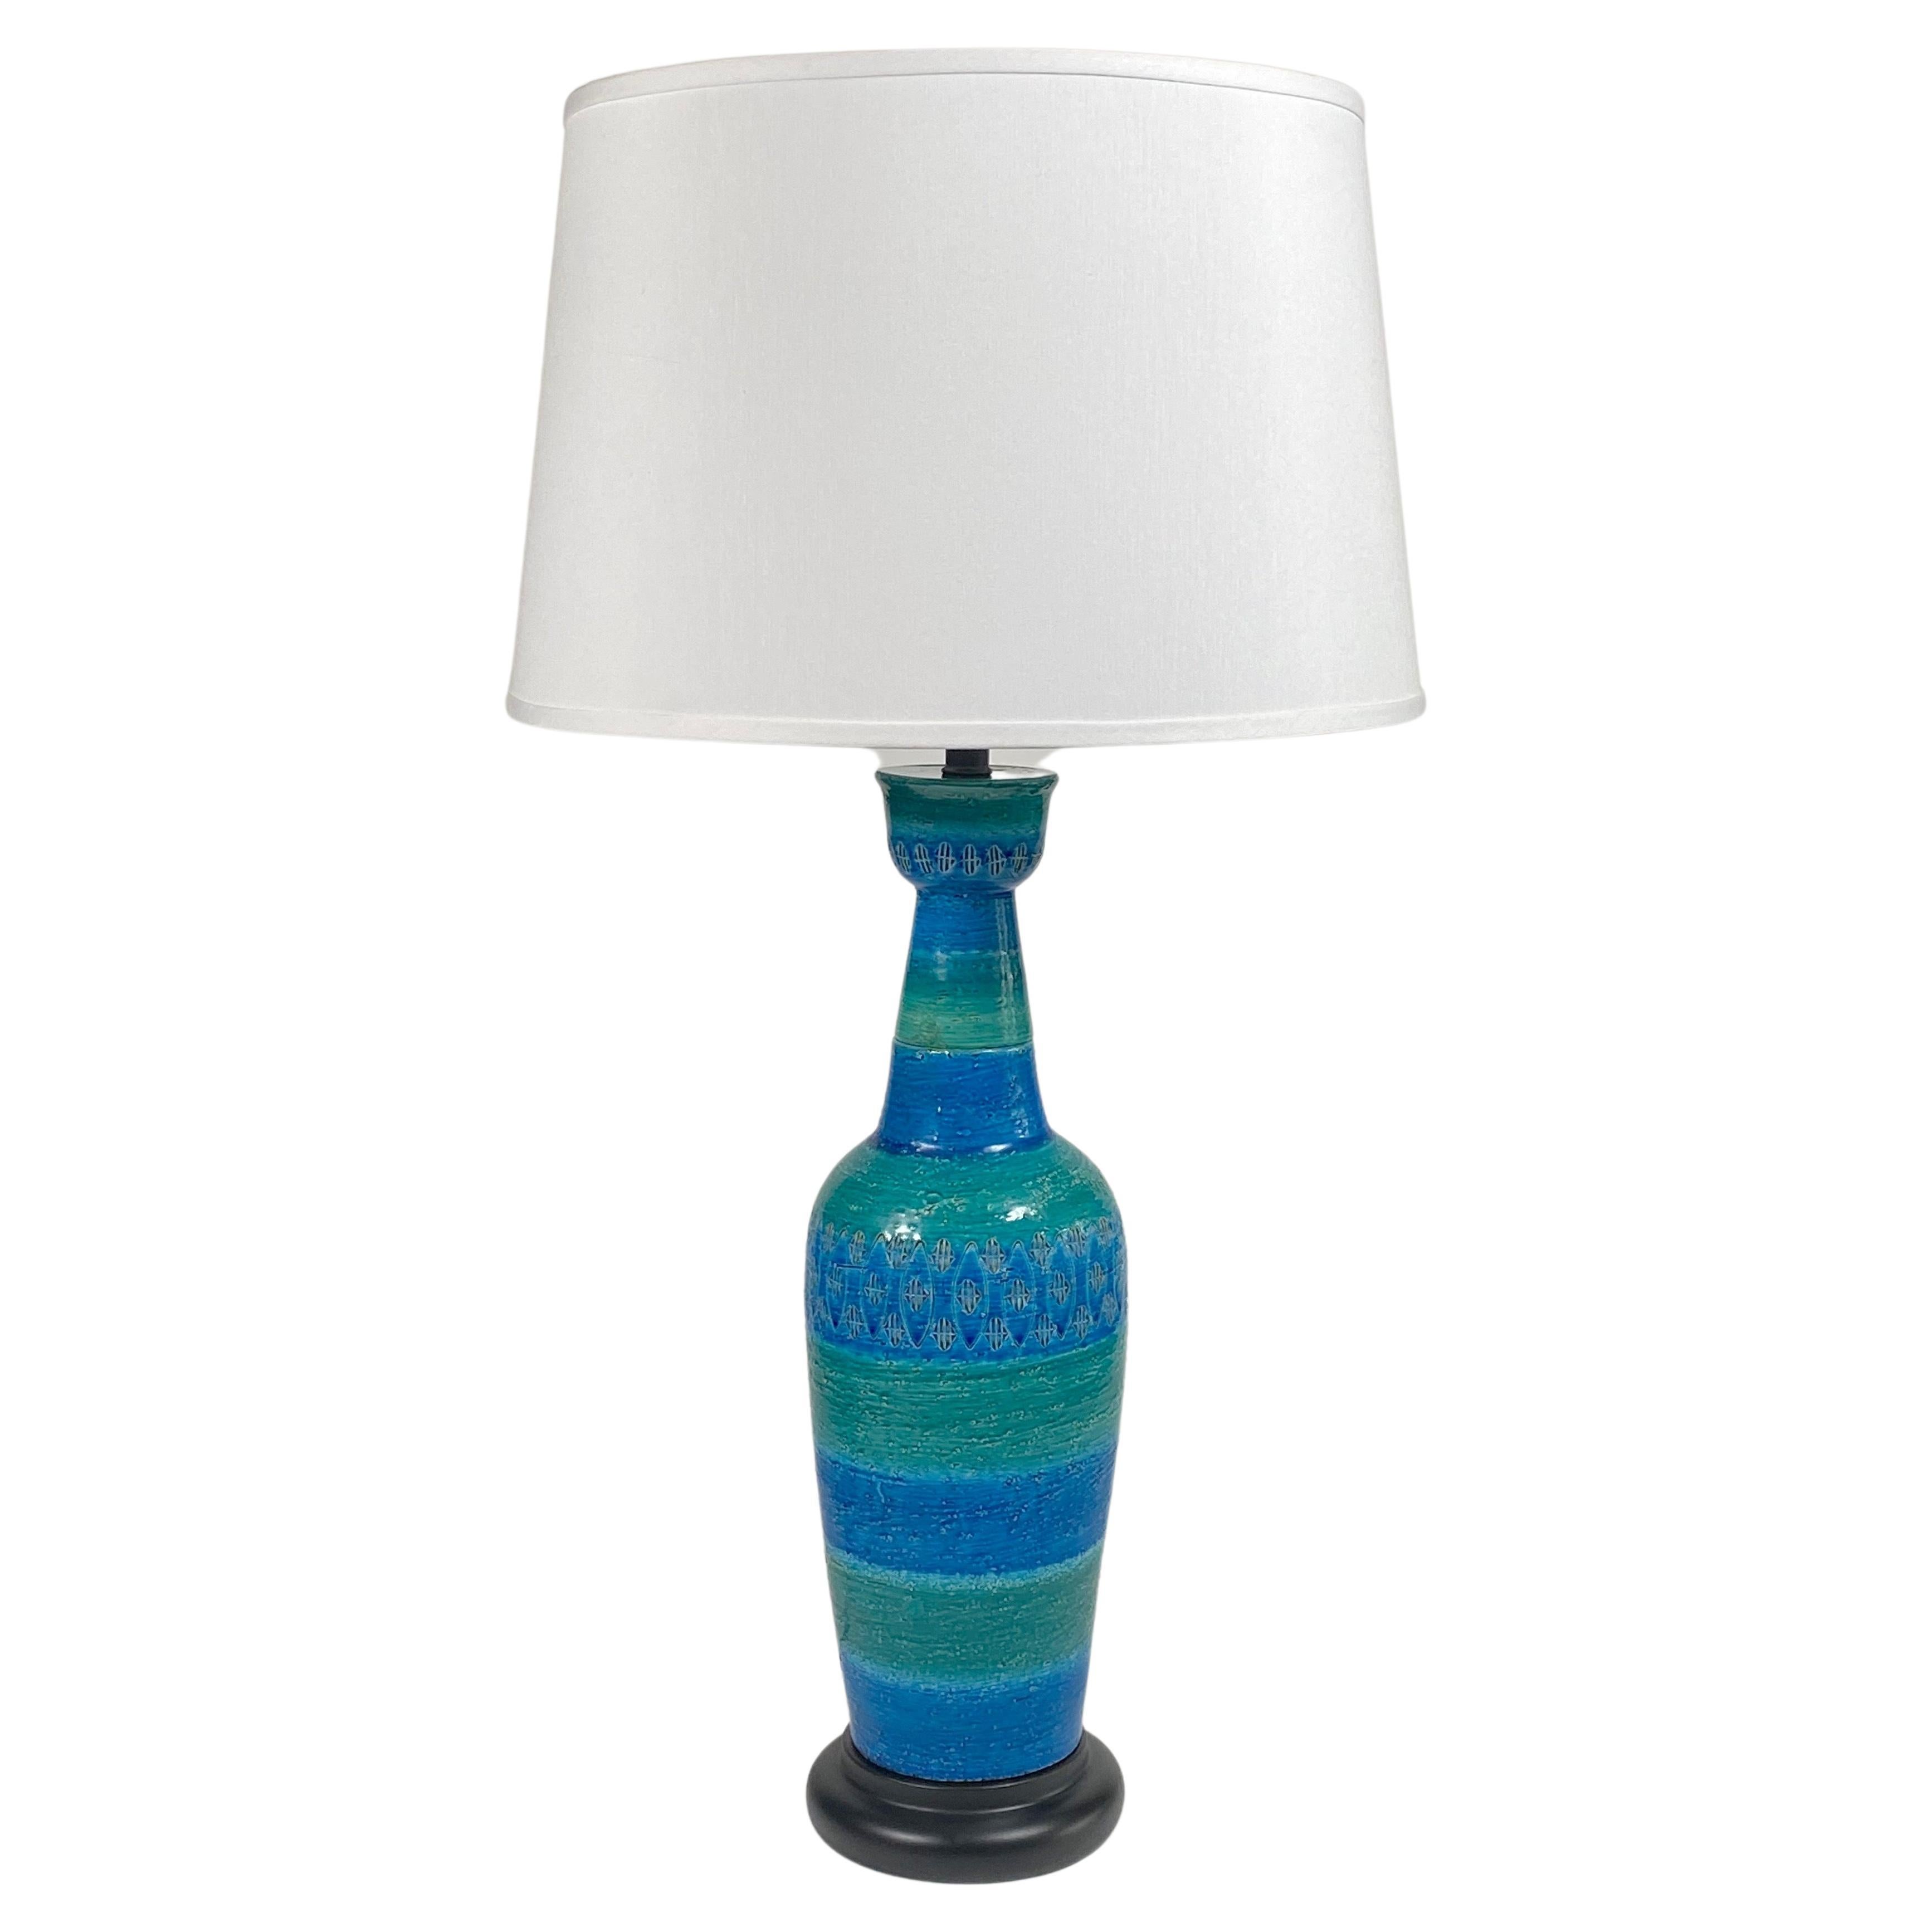 Aldo Londi for Bistossi of Italy Ceramic Table Lamp For Sale